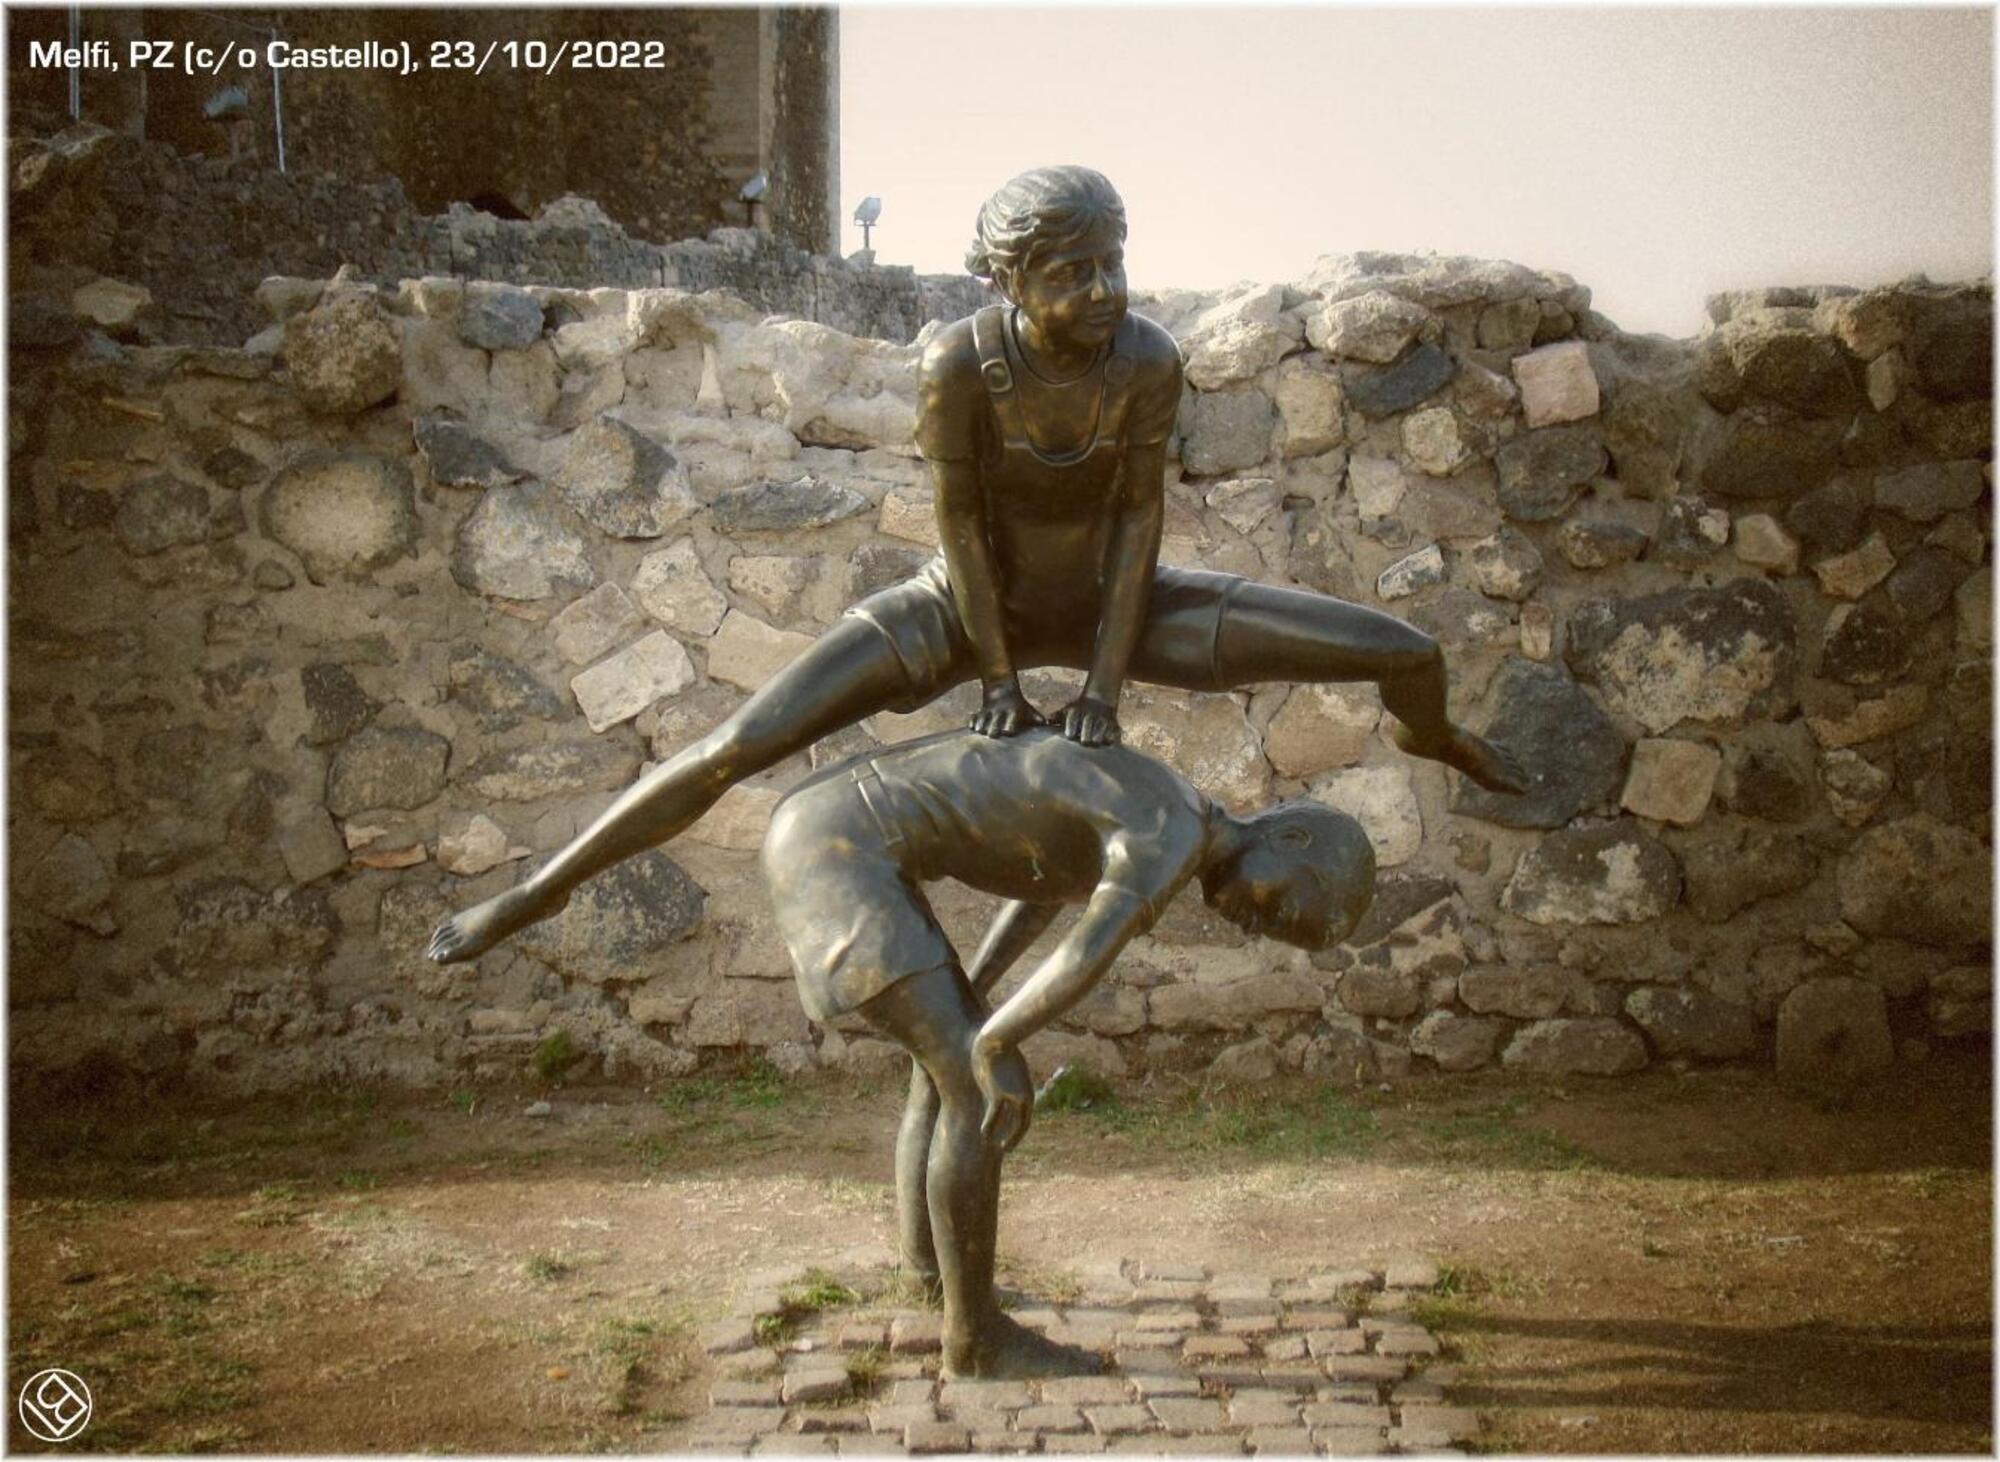 'Uno monta la luna', scultura in bronzo posta all'esterno del castello di Melfi (PZ).